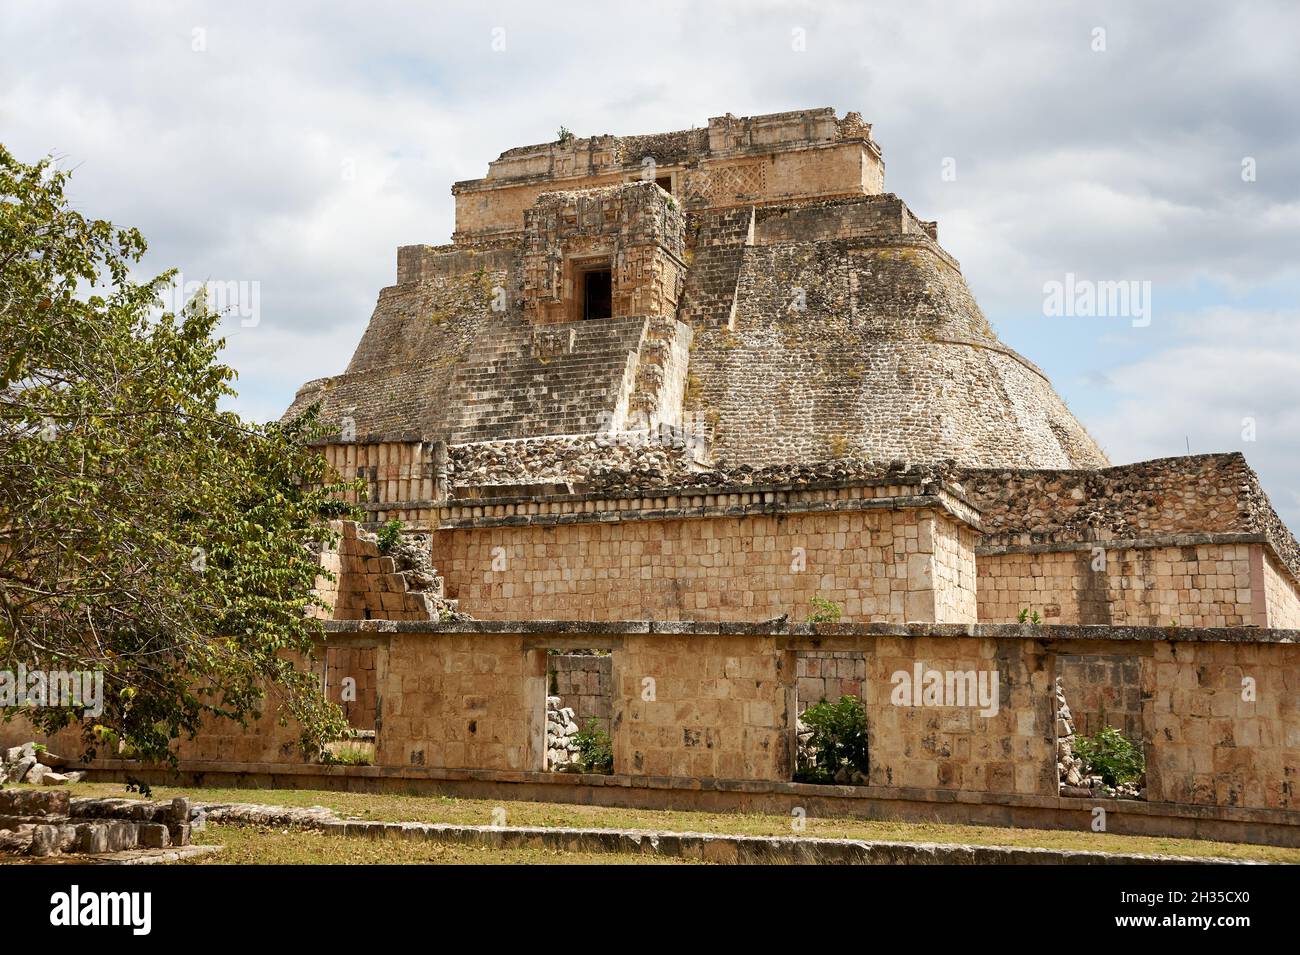 Pyramid of the Magician at the Mayan ruins of Uxmal, Yucatan, Mexico Stock Photo